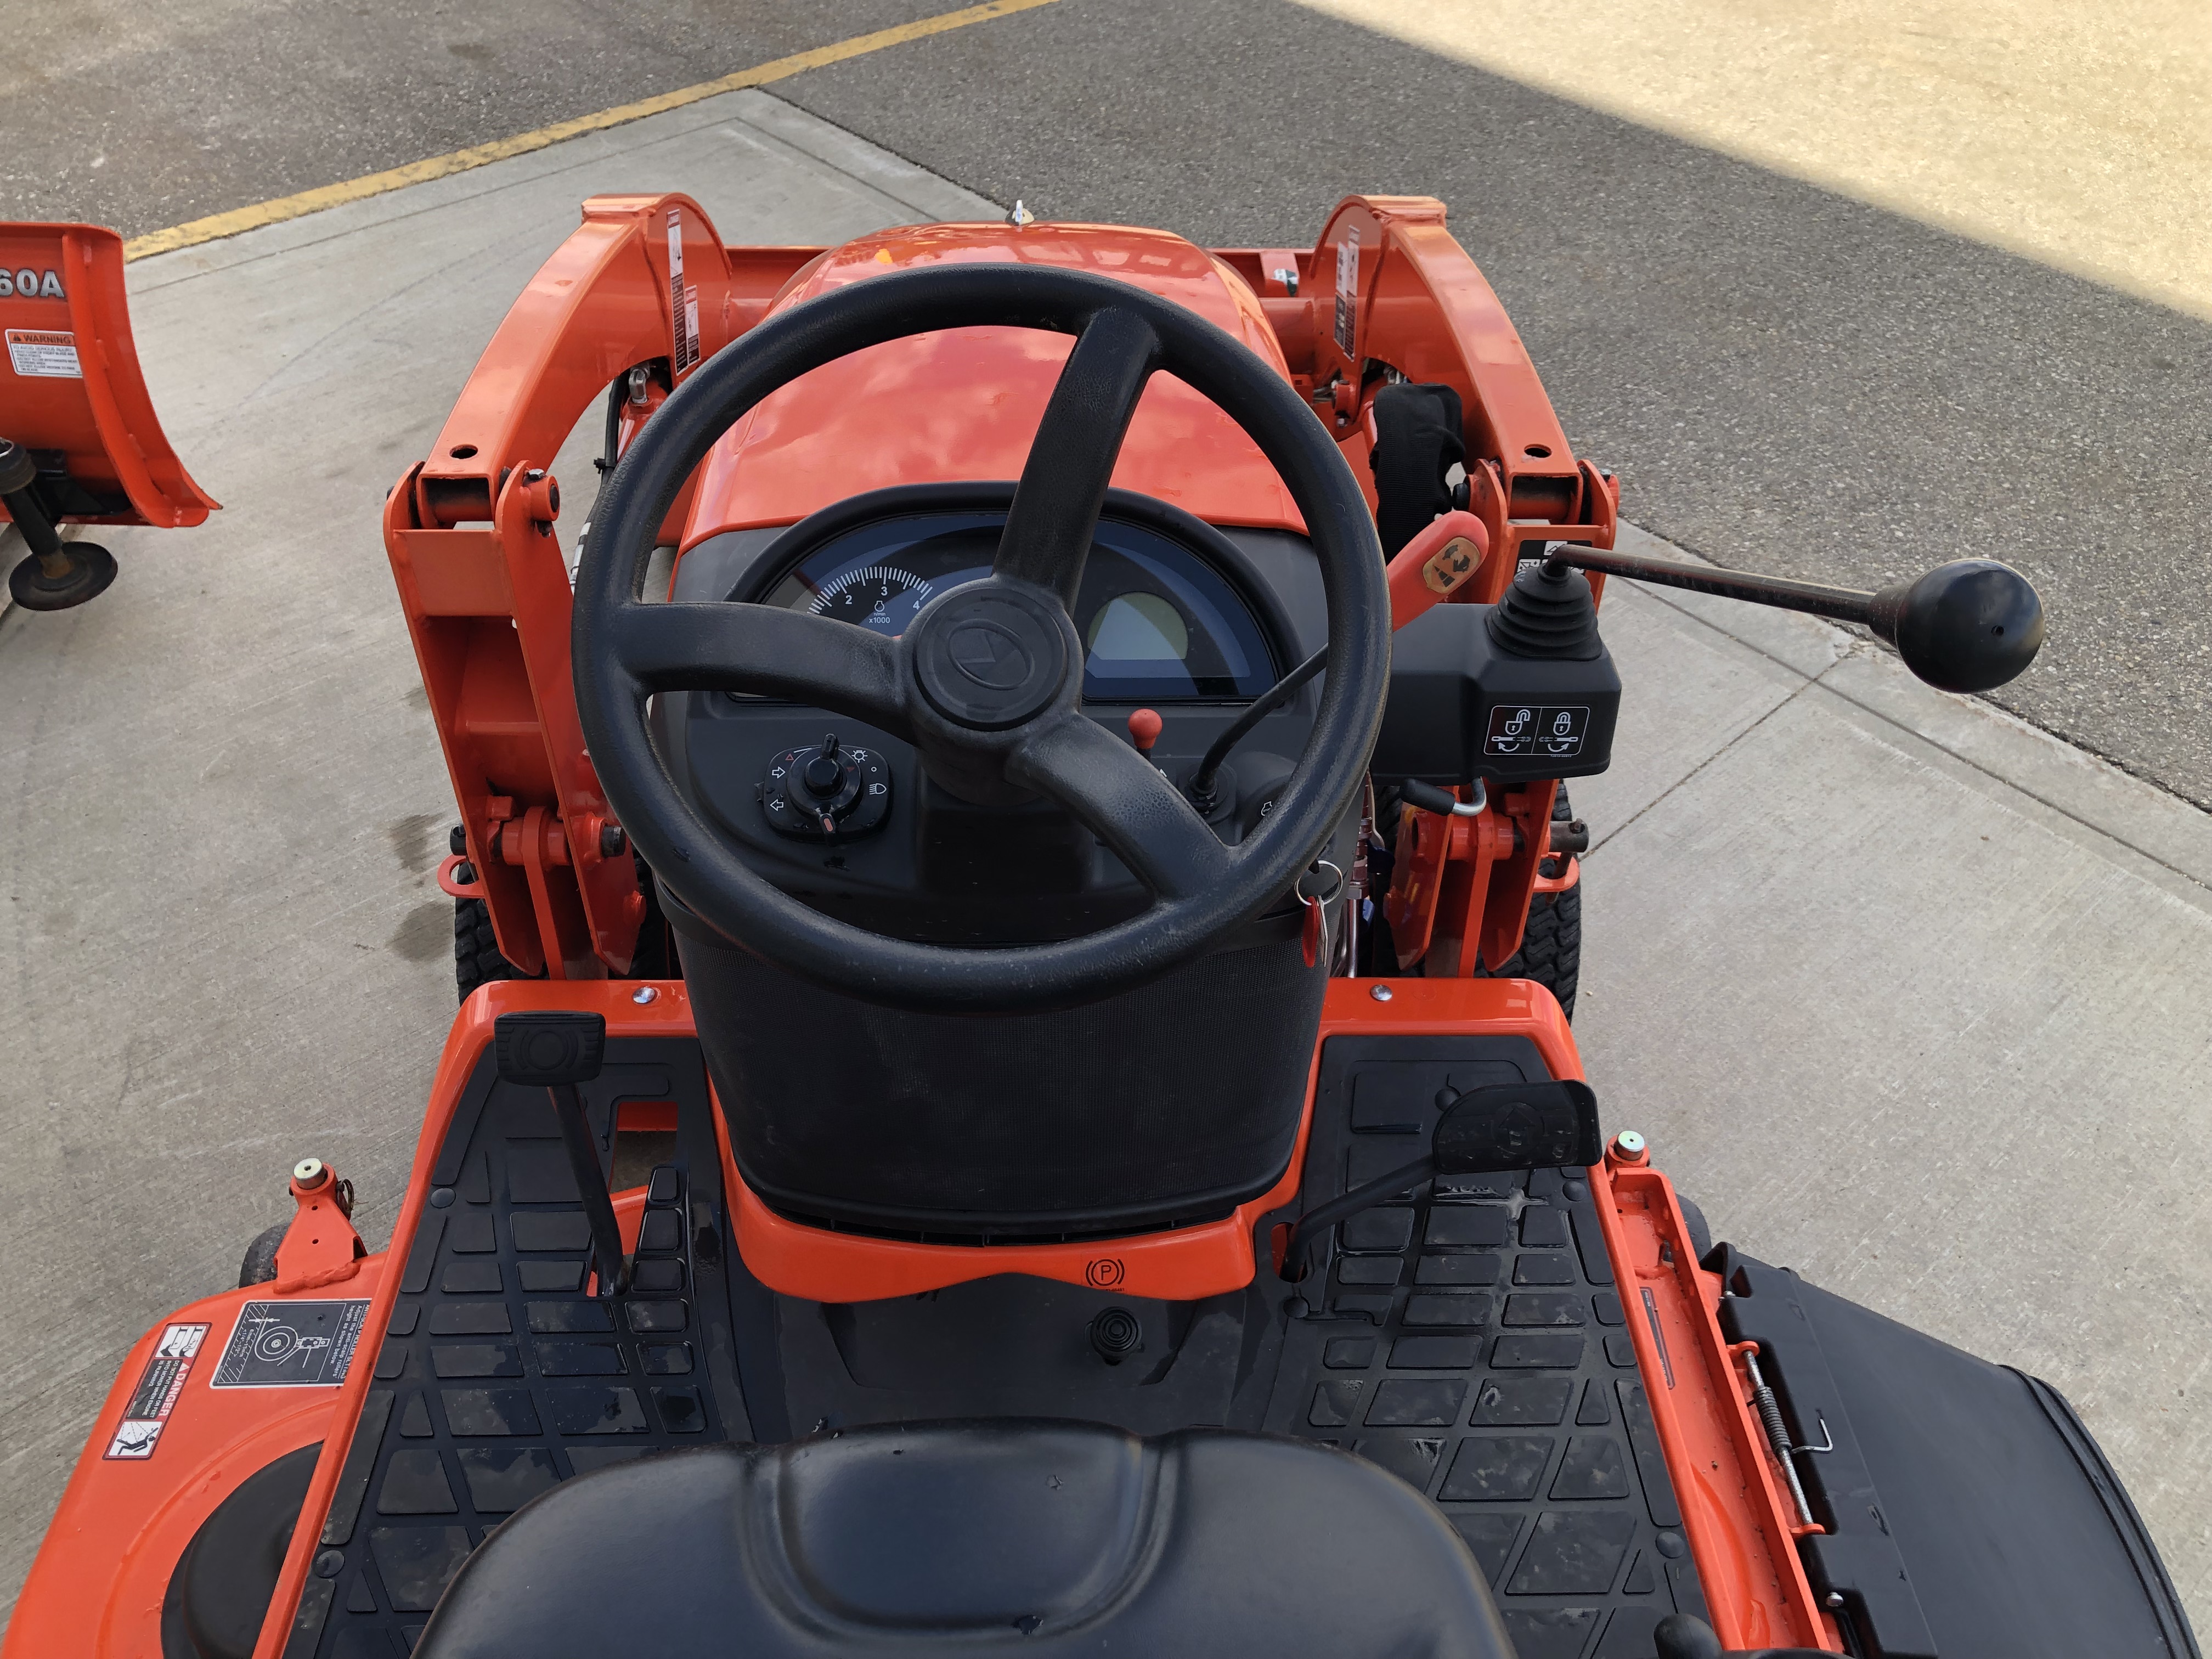 2015 Kubota BX2370 Tractor